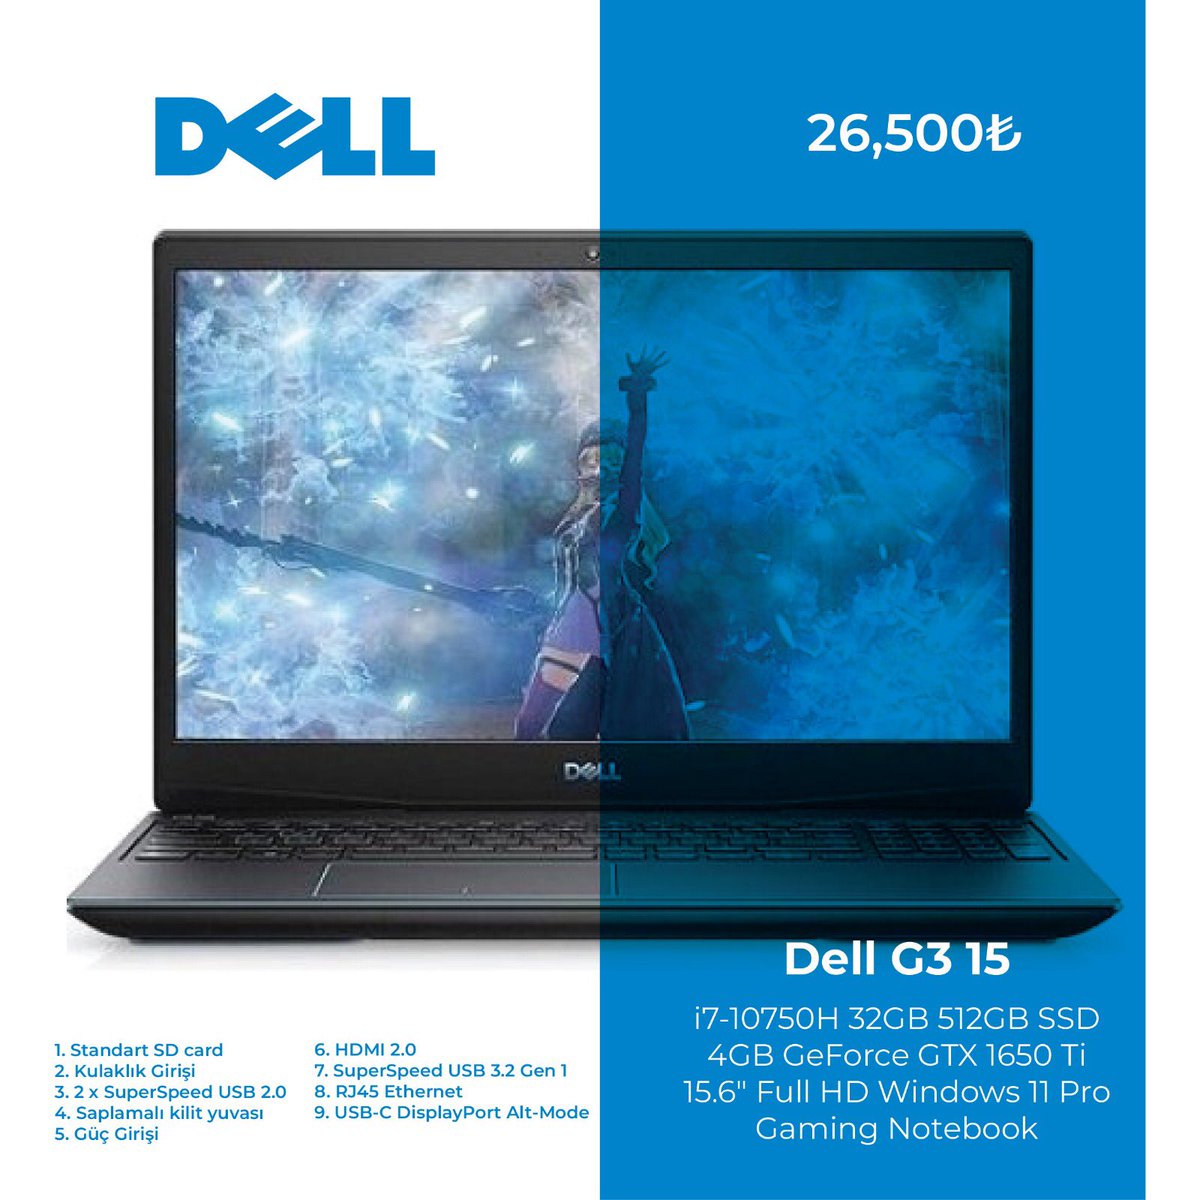 Dell G3 15
#dell #inteli7 #1650ti #bilgisayar #teknikservis #ikinciel